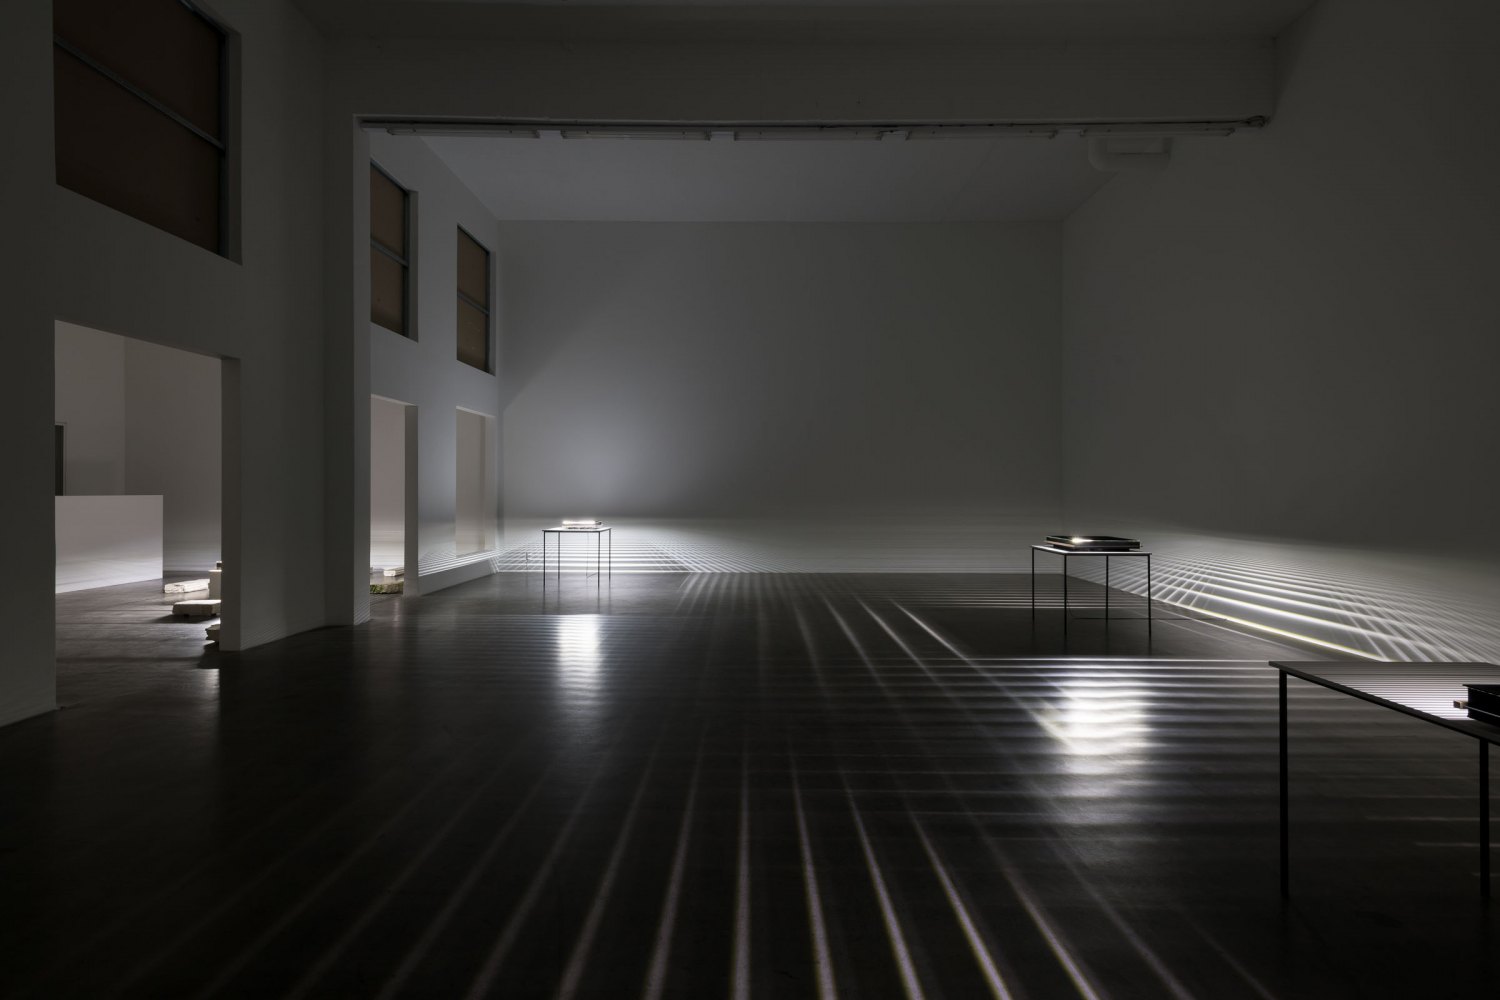 Installation view, Kitty Kraus, Galerie Neu, 2022